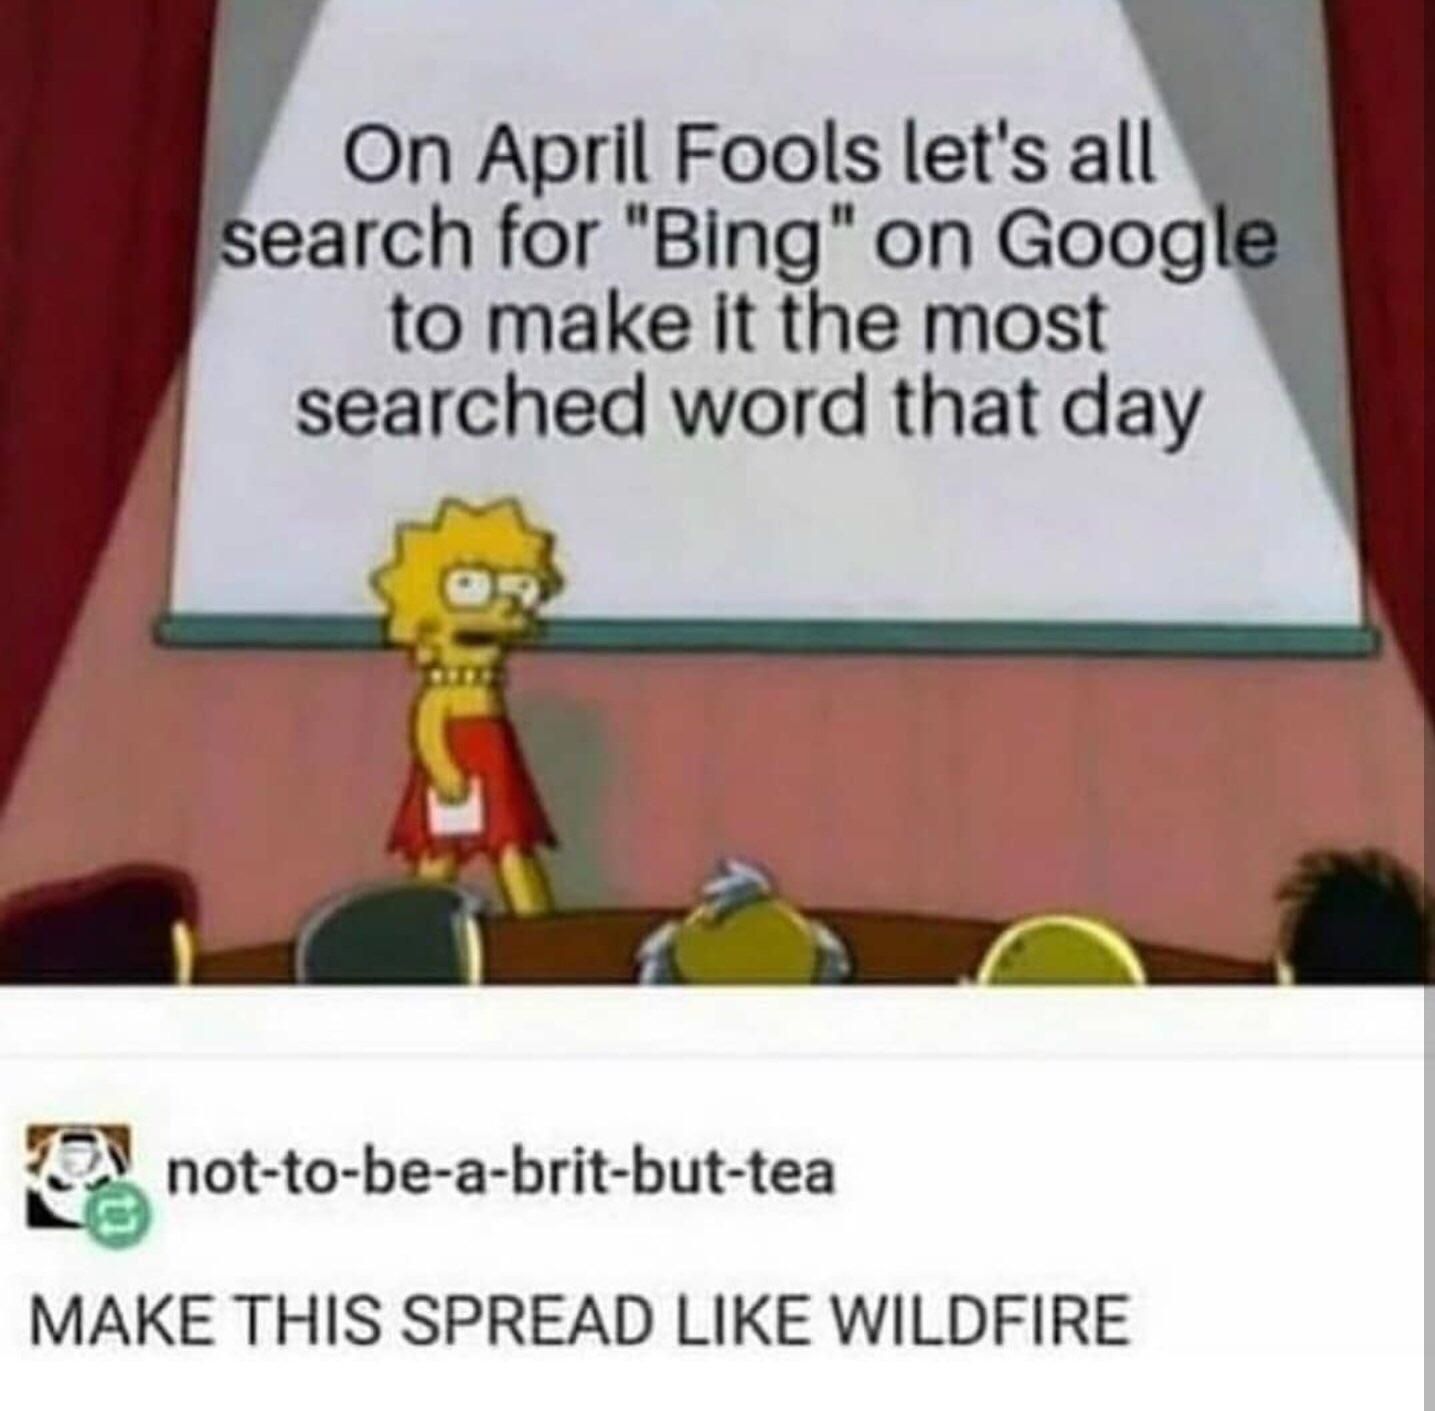 Let’s prank google